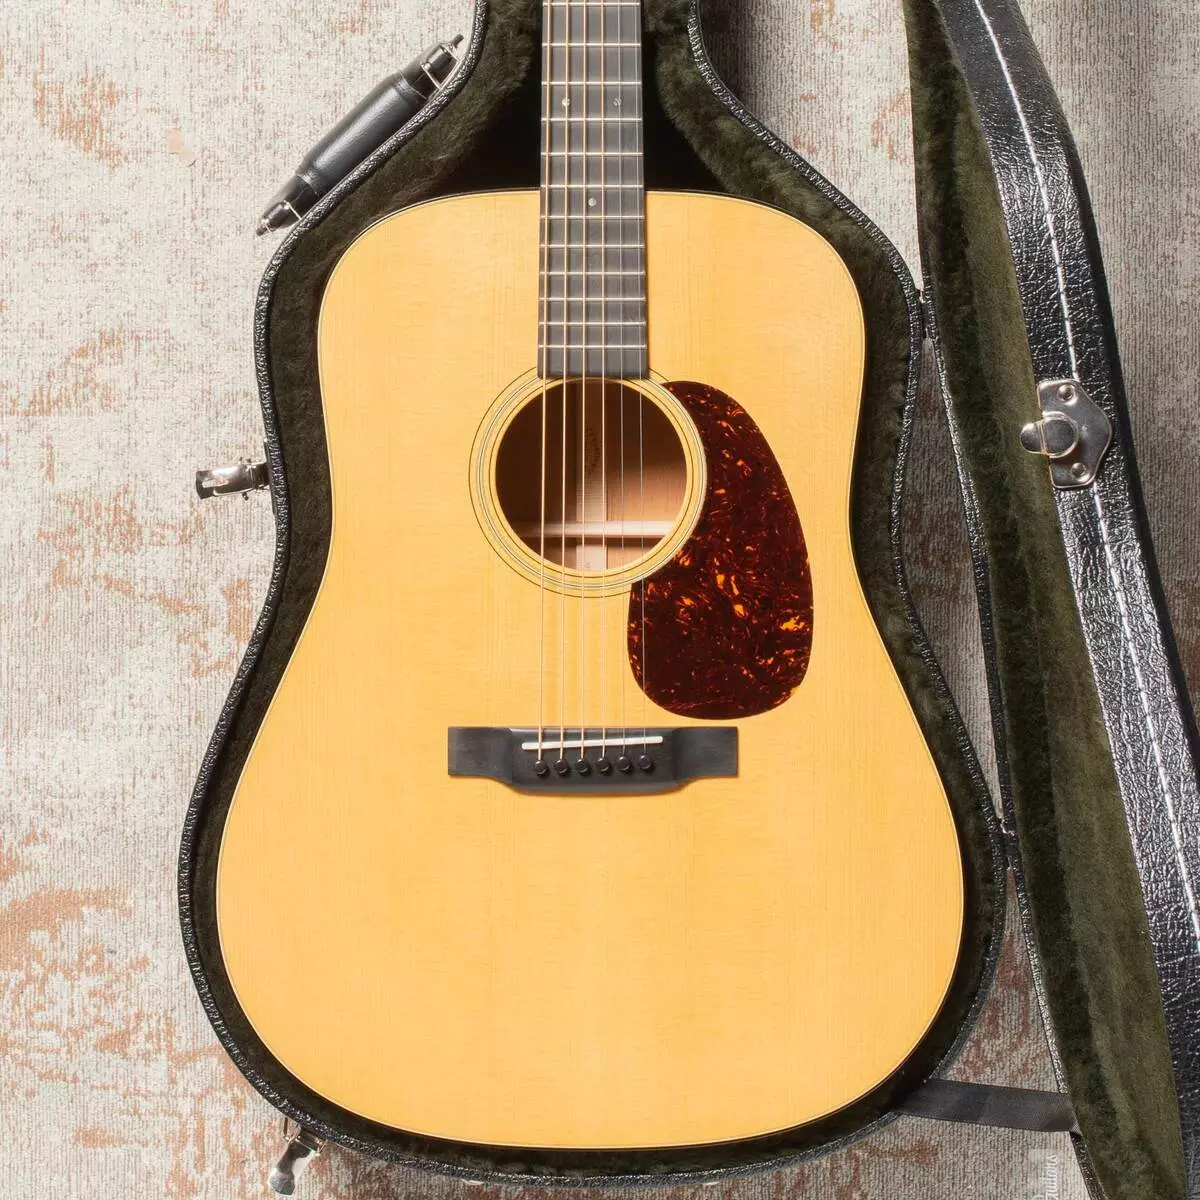 Guitar acoustic tốt nhất cho người mới bắt đầu: Chọn gì cho người mới bắt đầu? Đánh giá của các công ty và các mô hình chi phí thấp hàng đầu, mẹo về việc lựa chọn âm học 27161_30